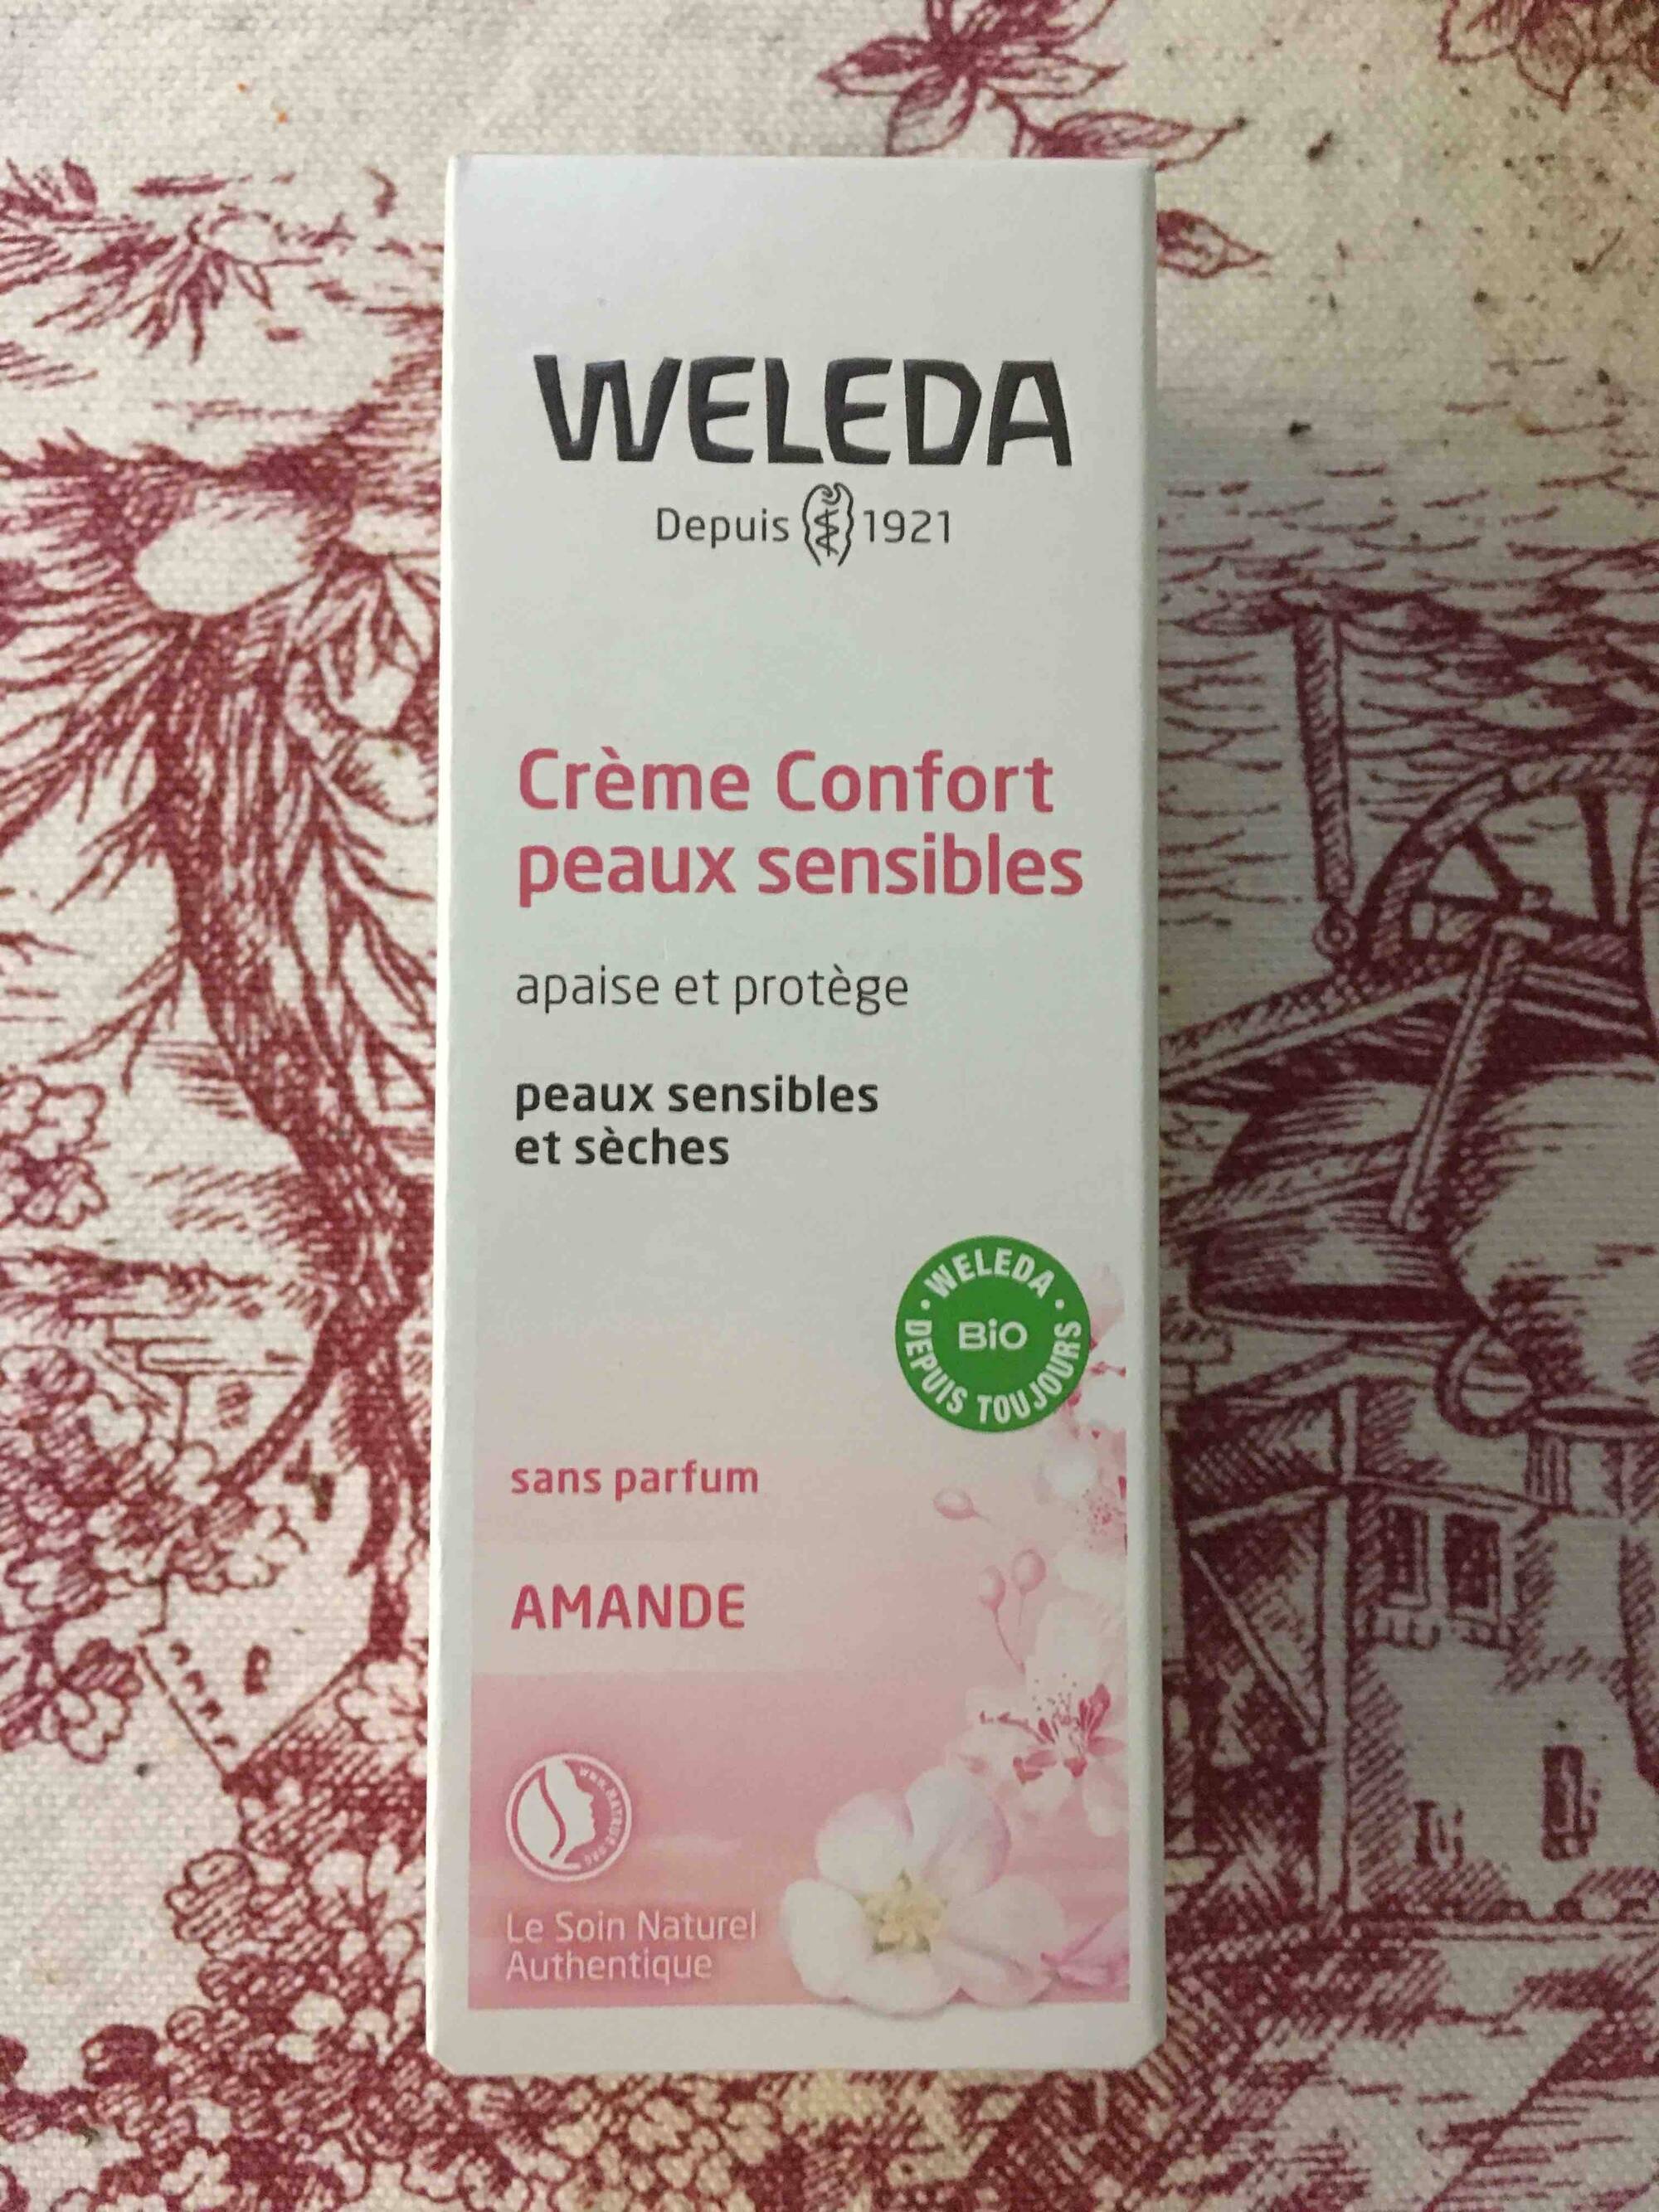 WELEDA - Amande - Crème confort peaux sensibles